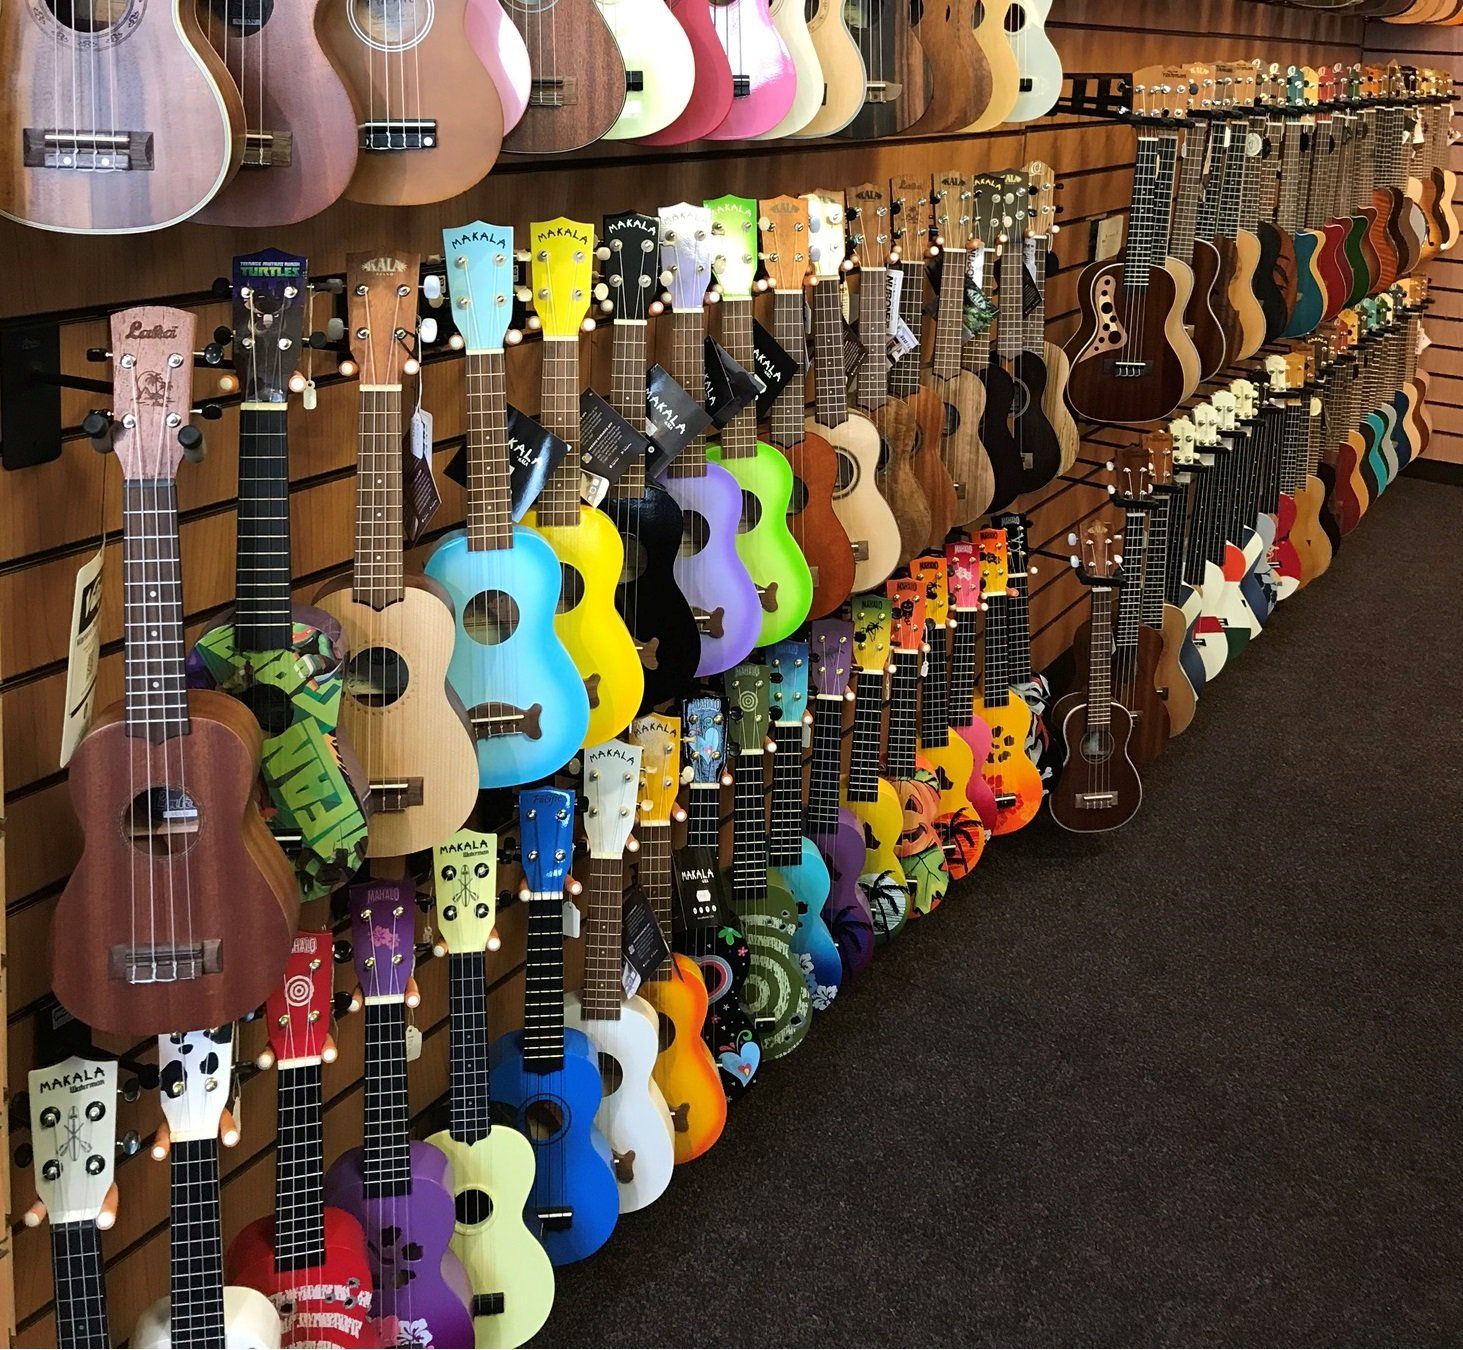 Scotland's premier ukulele store